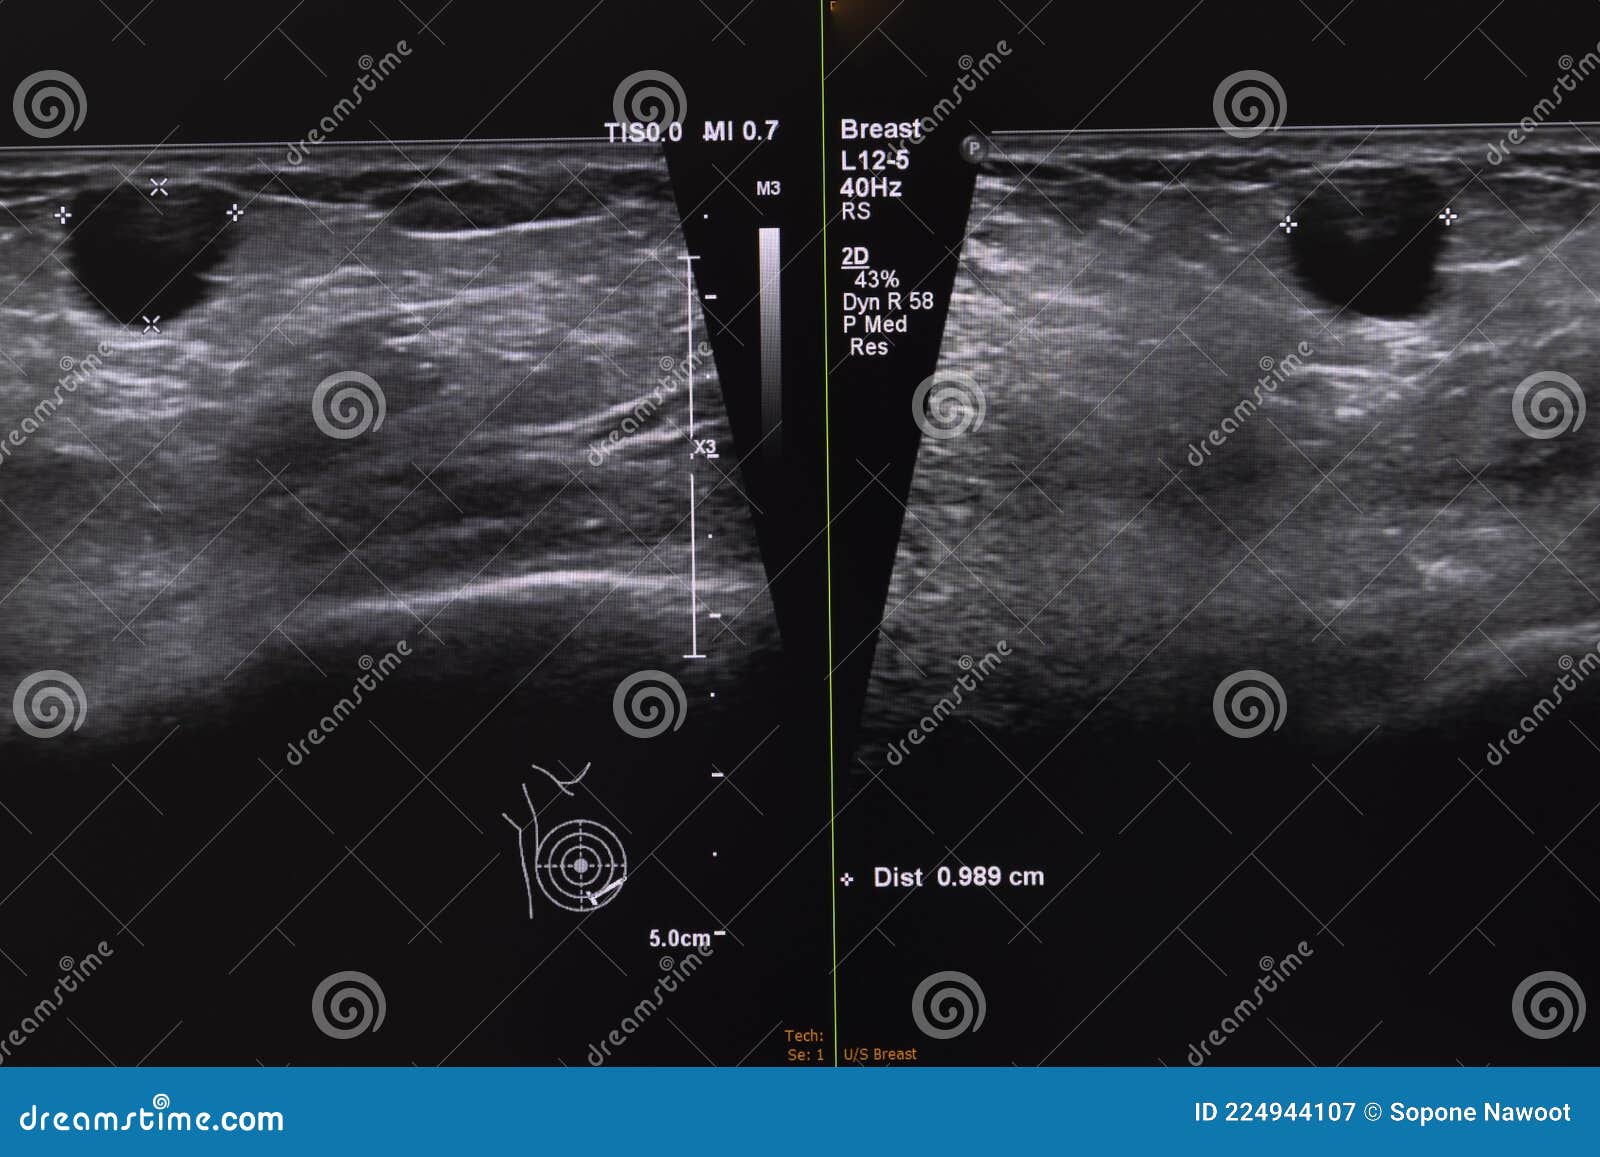 ultrasonography of breast nodule.